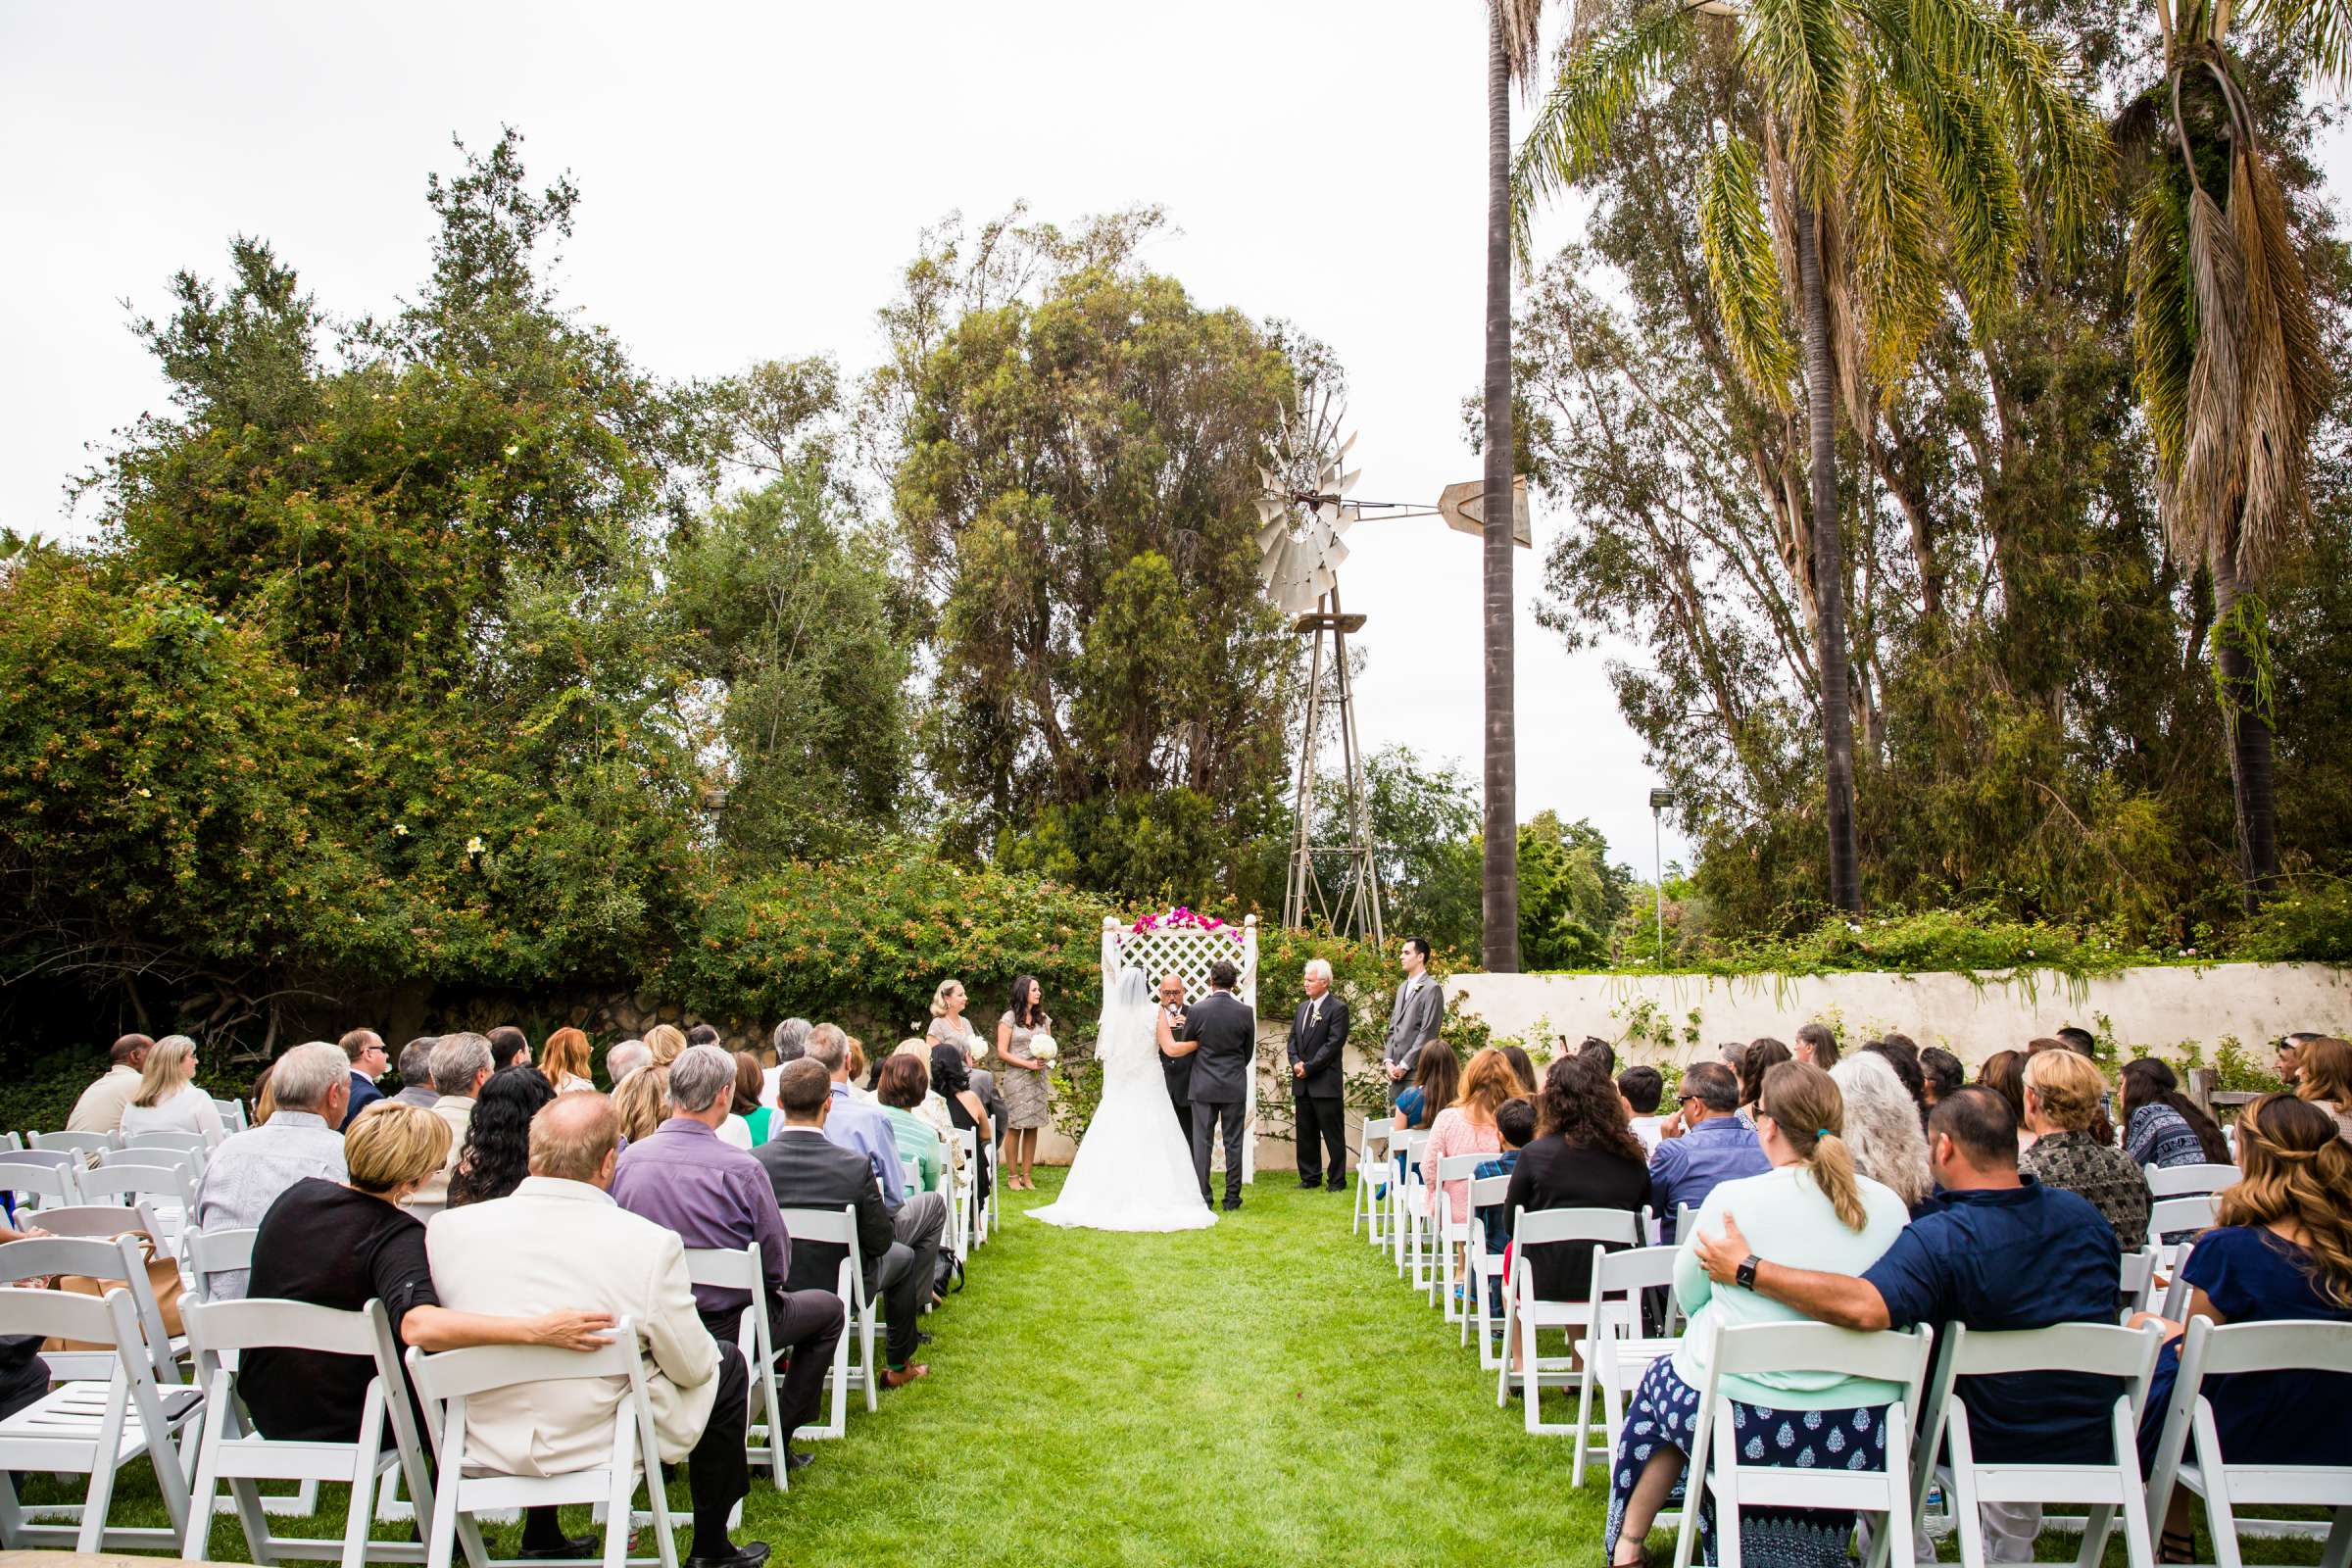 Rancho Buena Vista Adobe Wedding, Ellinor and Frank Wedding Photo #24 by True Photography